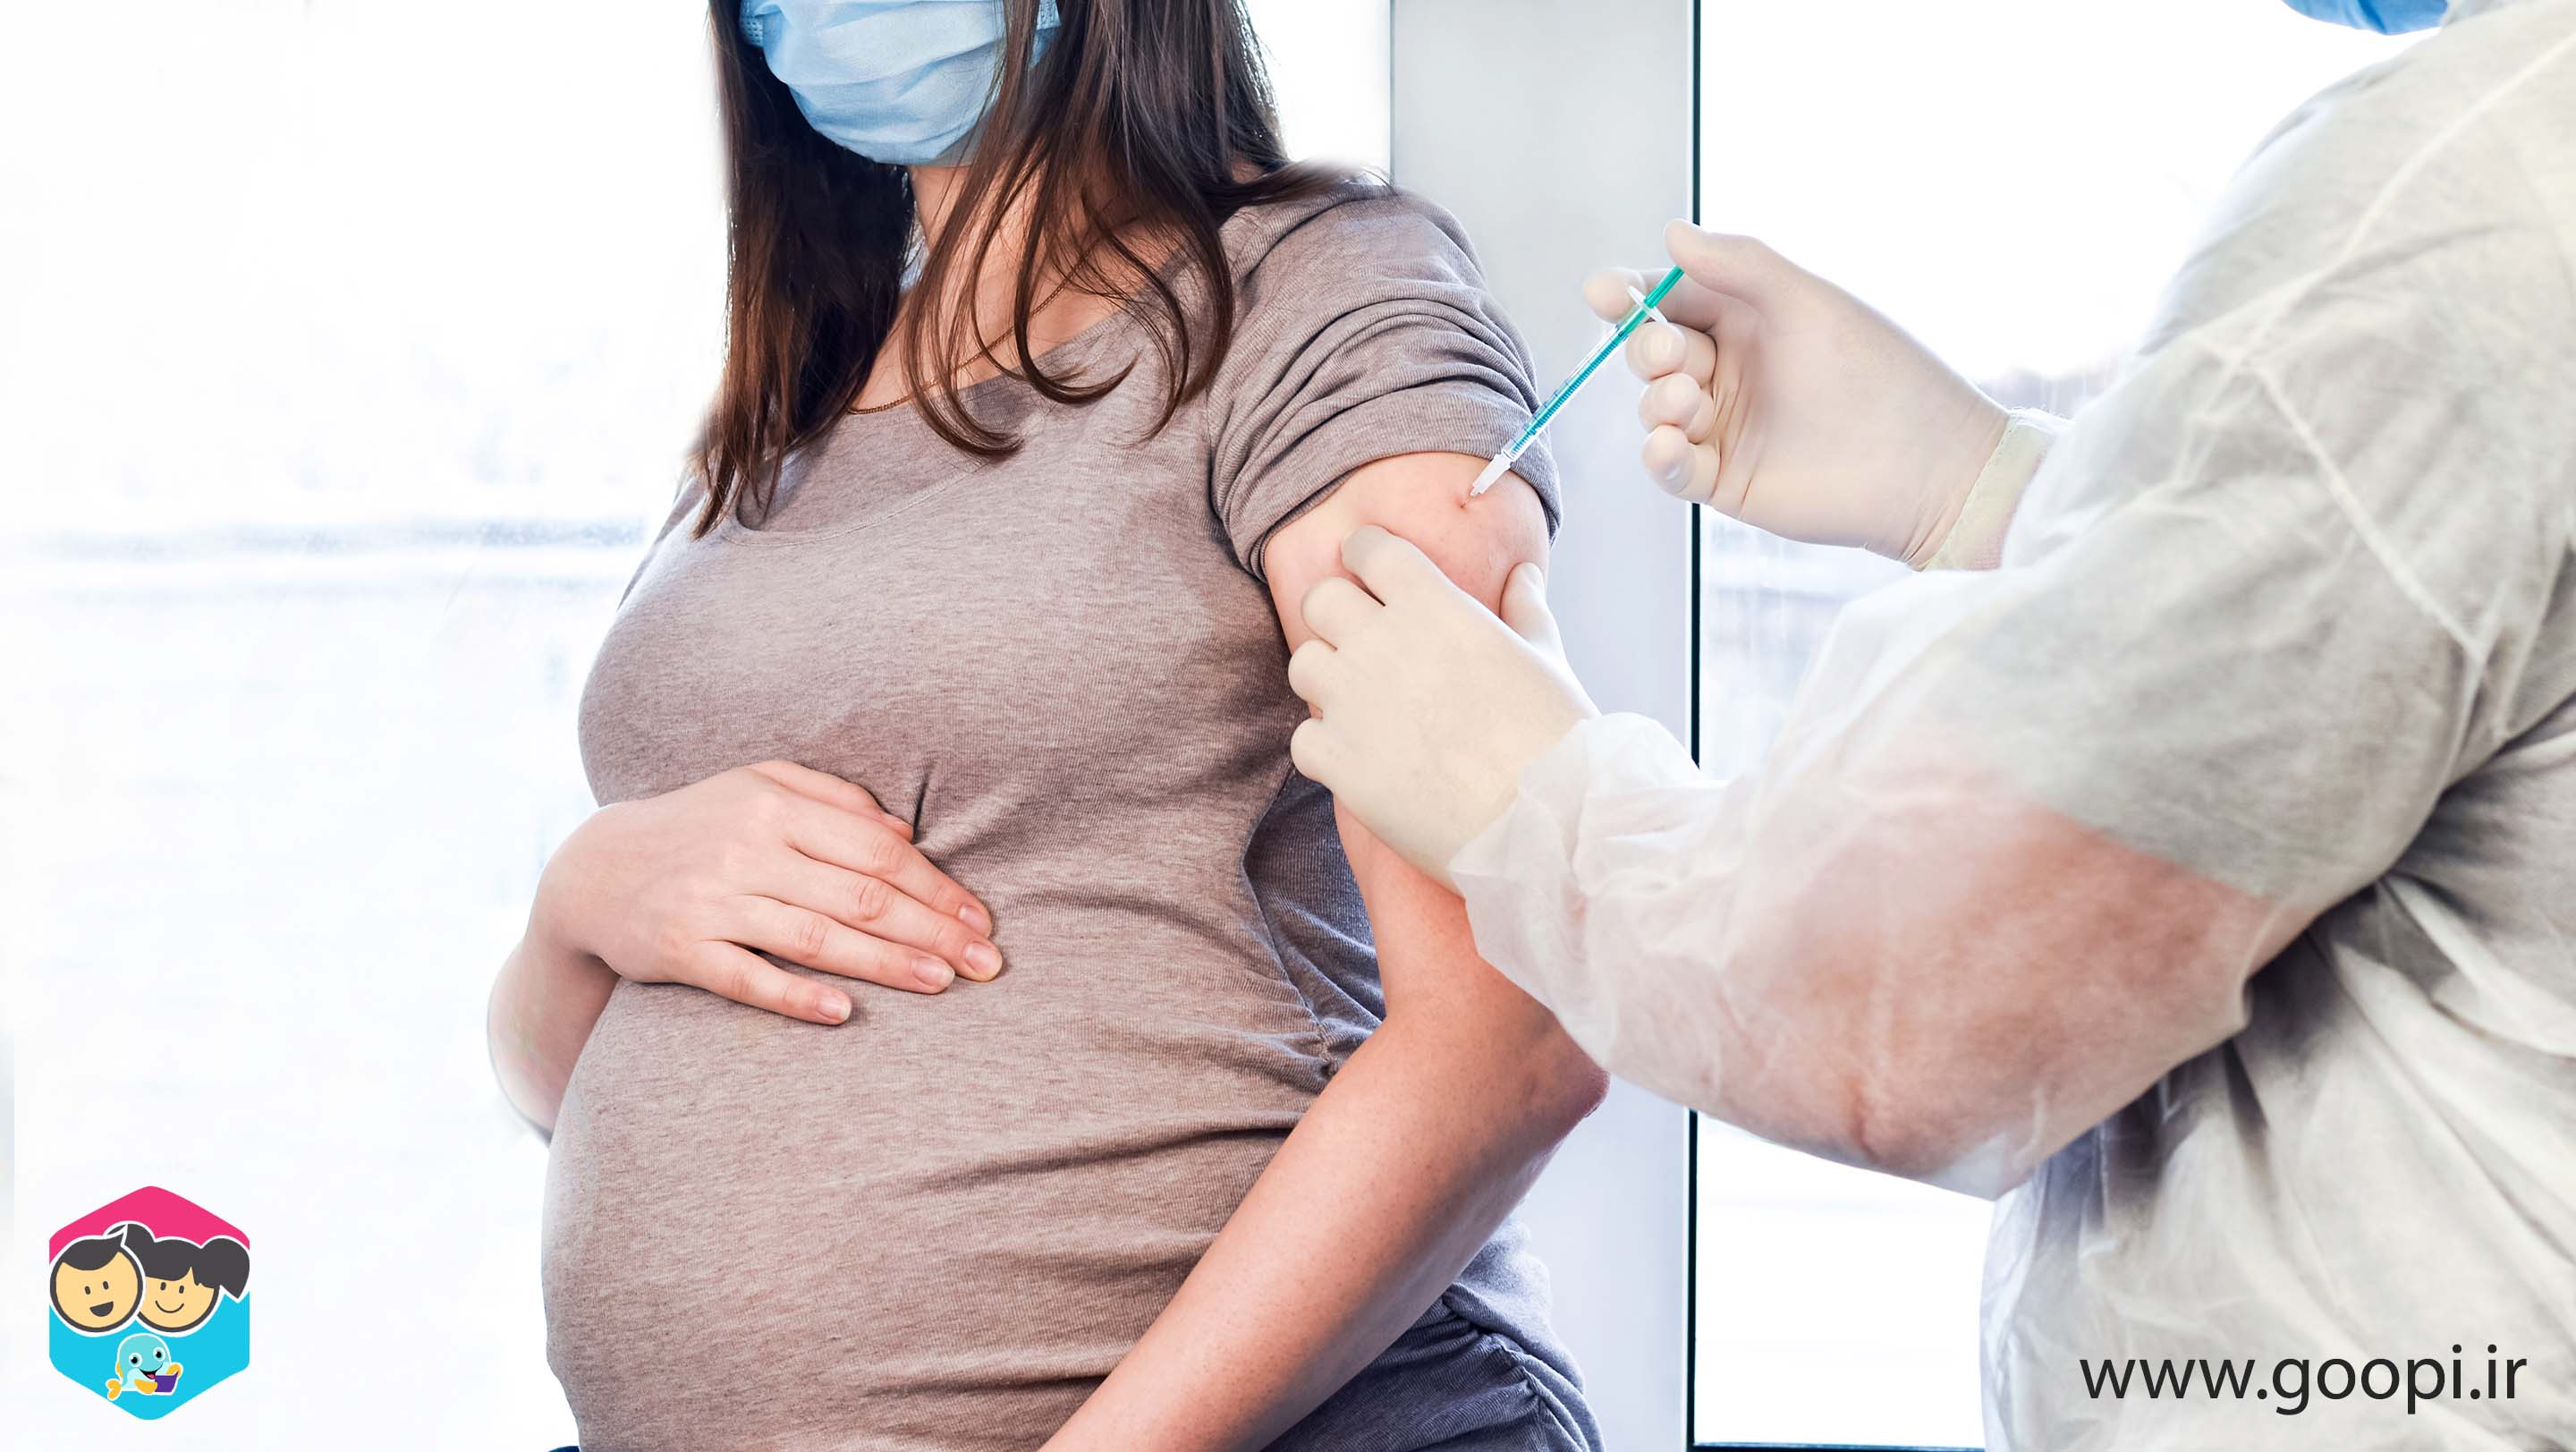 نکاتی برای مادران باردار در واکسن کرونا | مجله گوپی